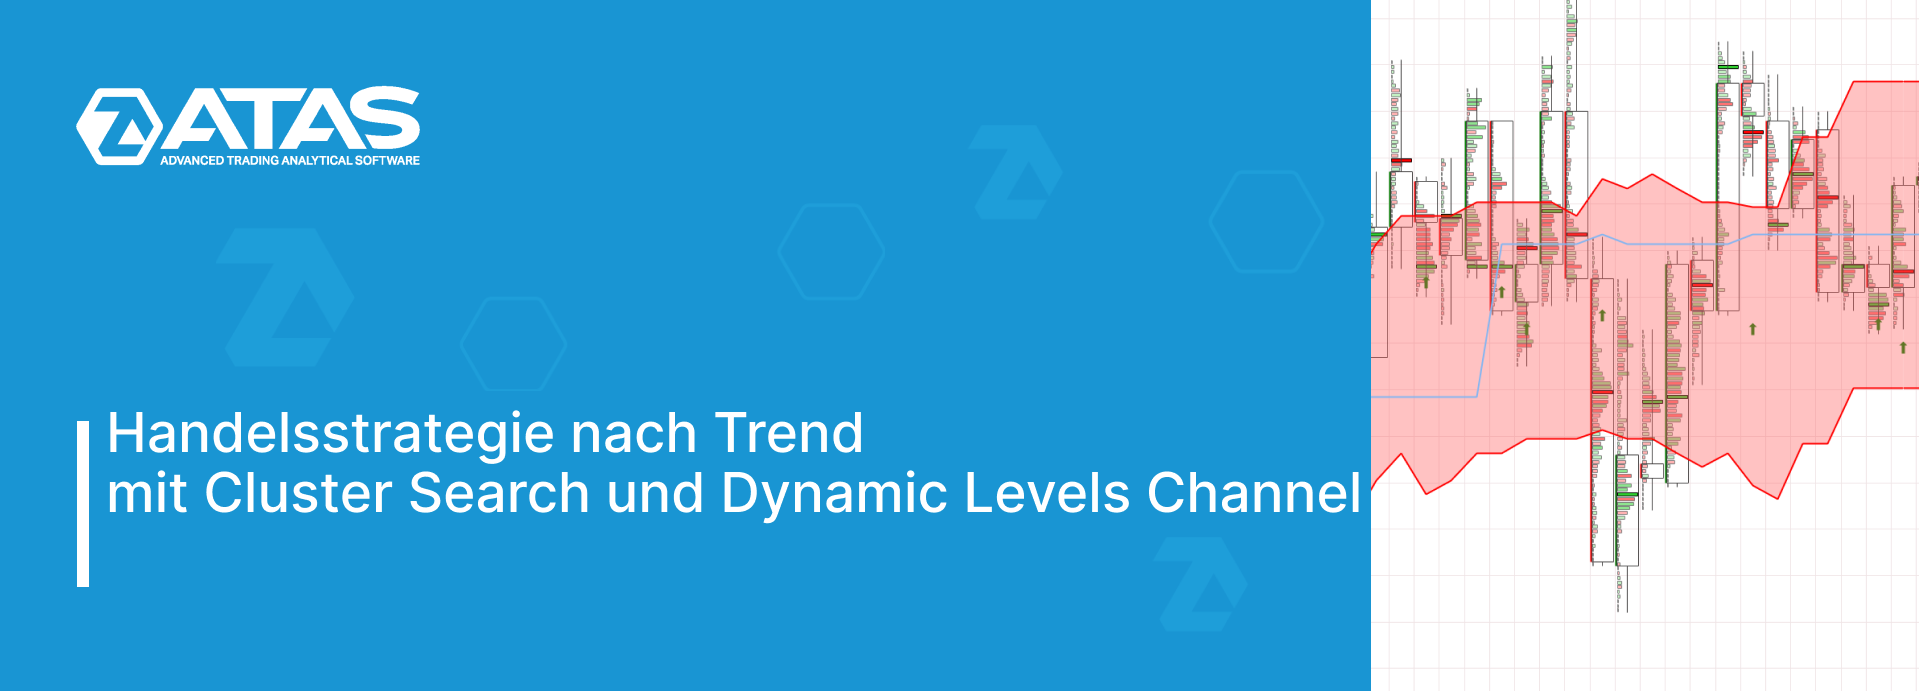 Handelsstrategie nach Trend mit Cluster Search und Dynamic Levels Channel